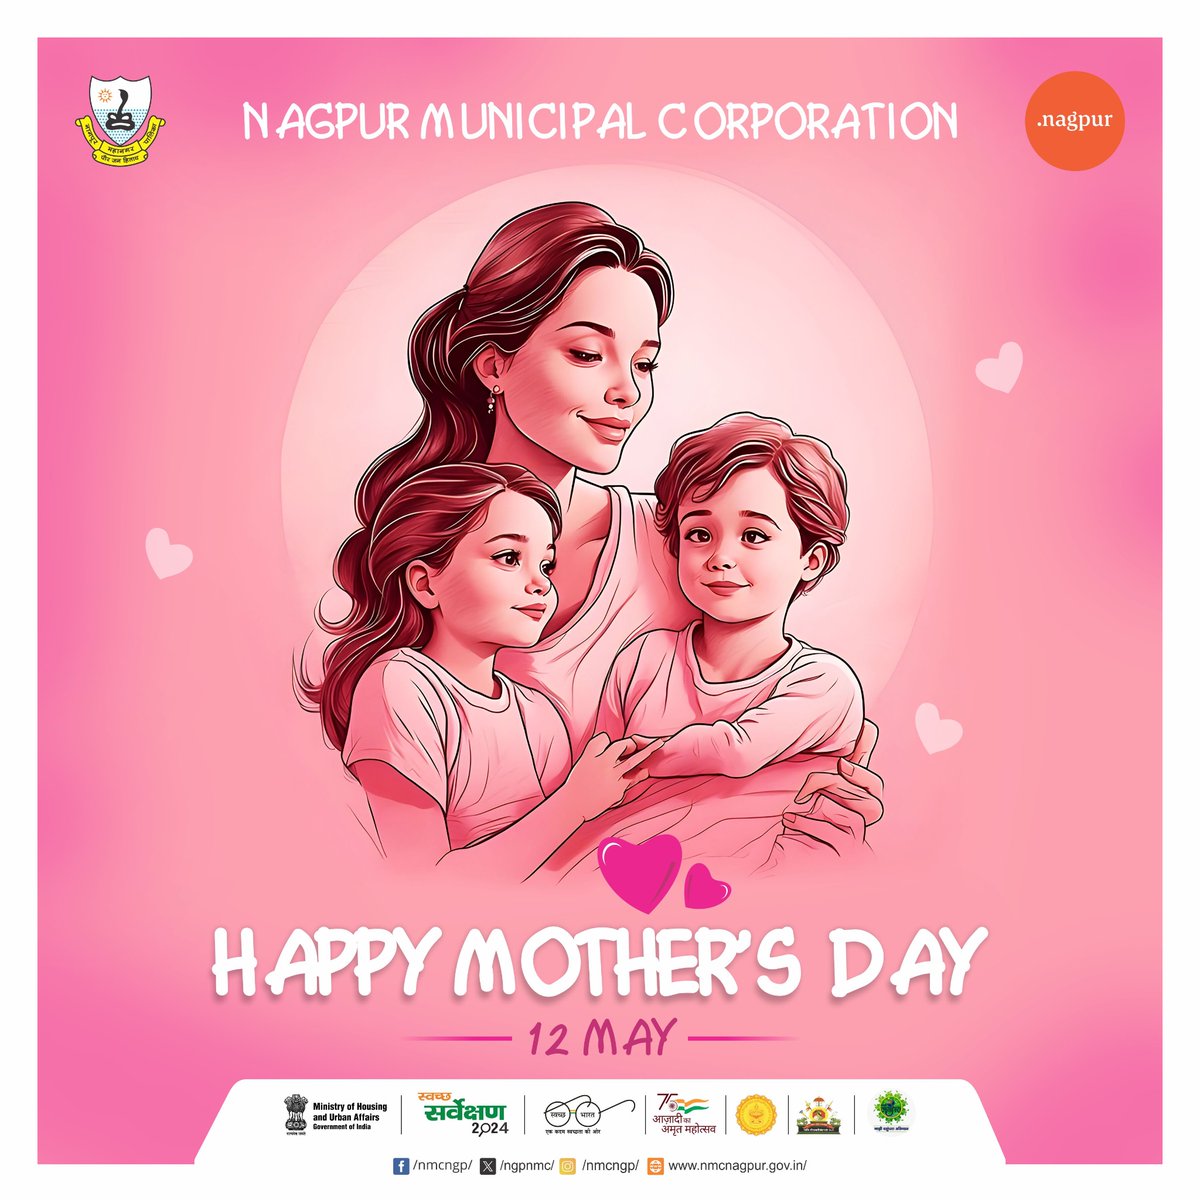 Happy Mother’s Day #nmc #ngpur